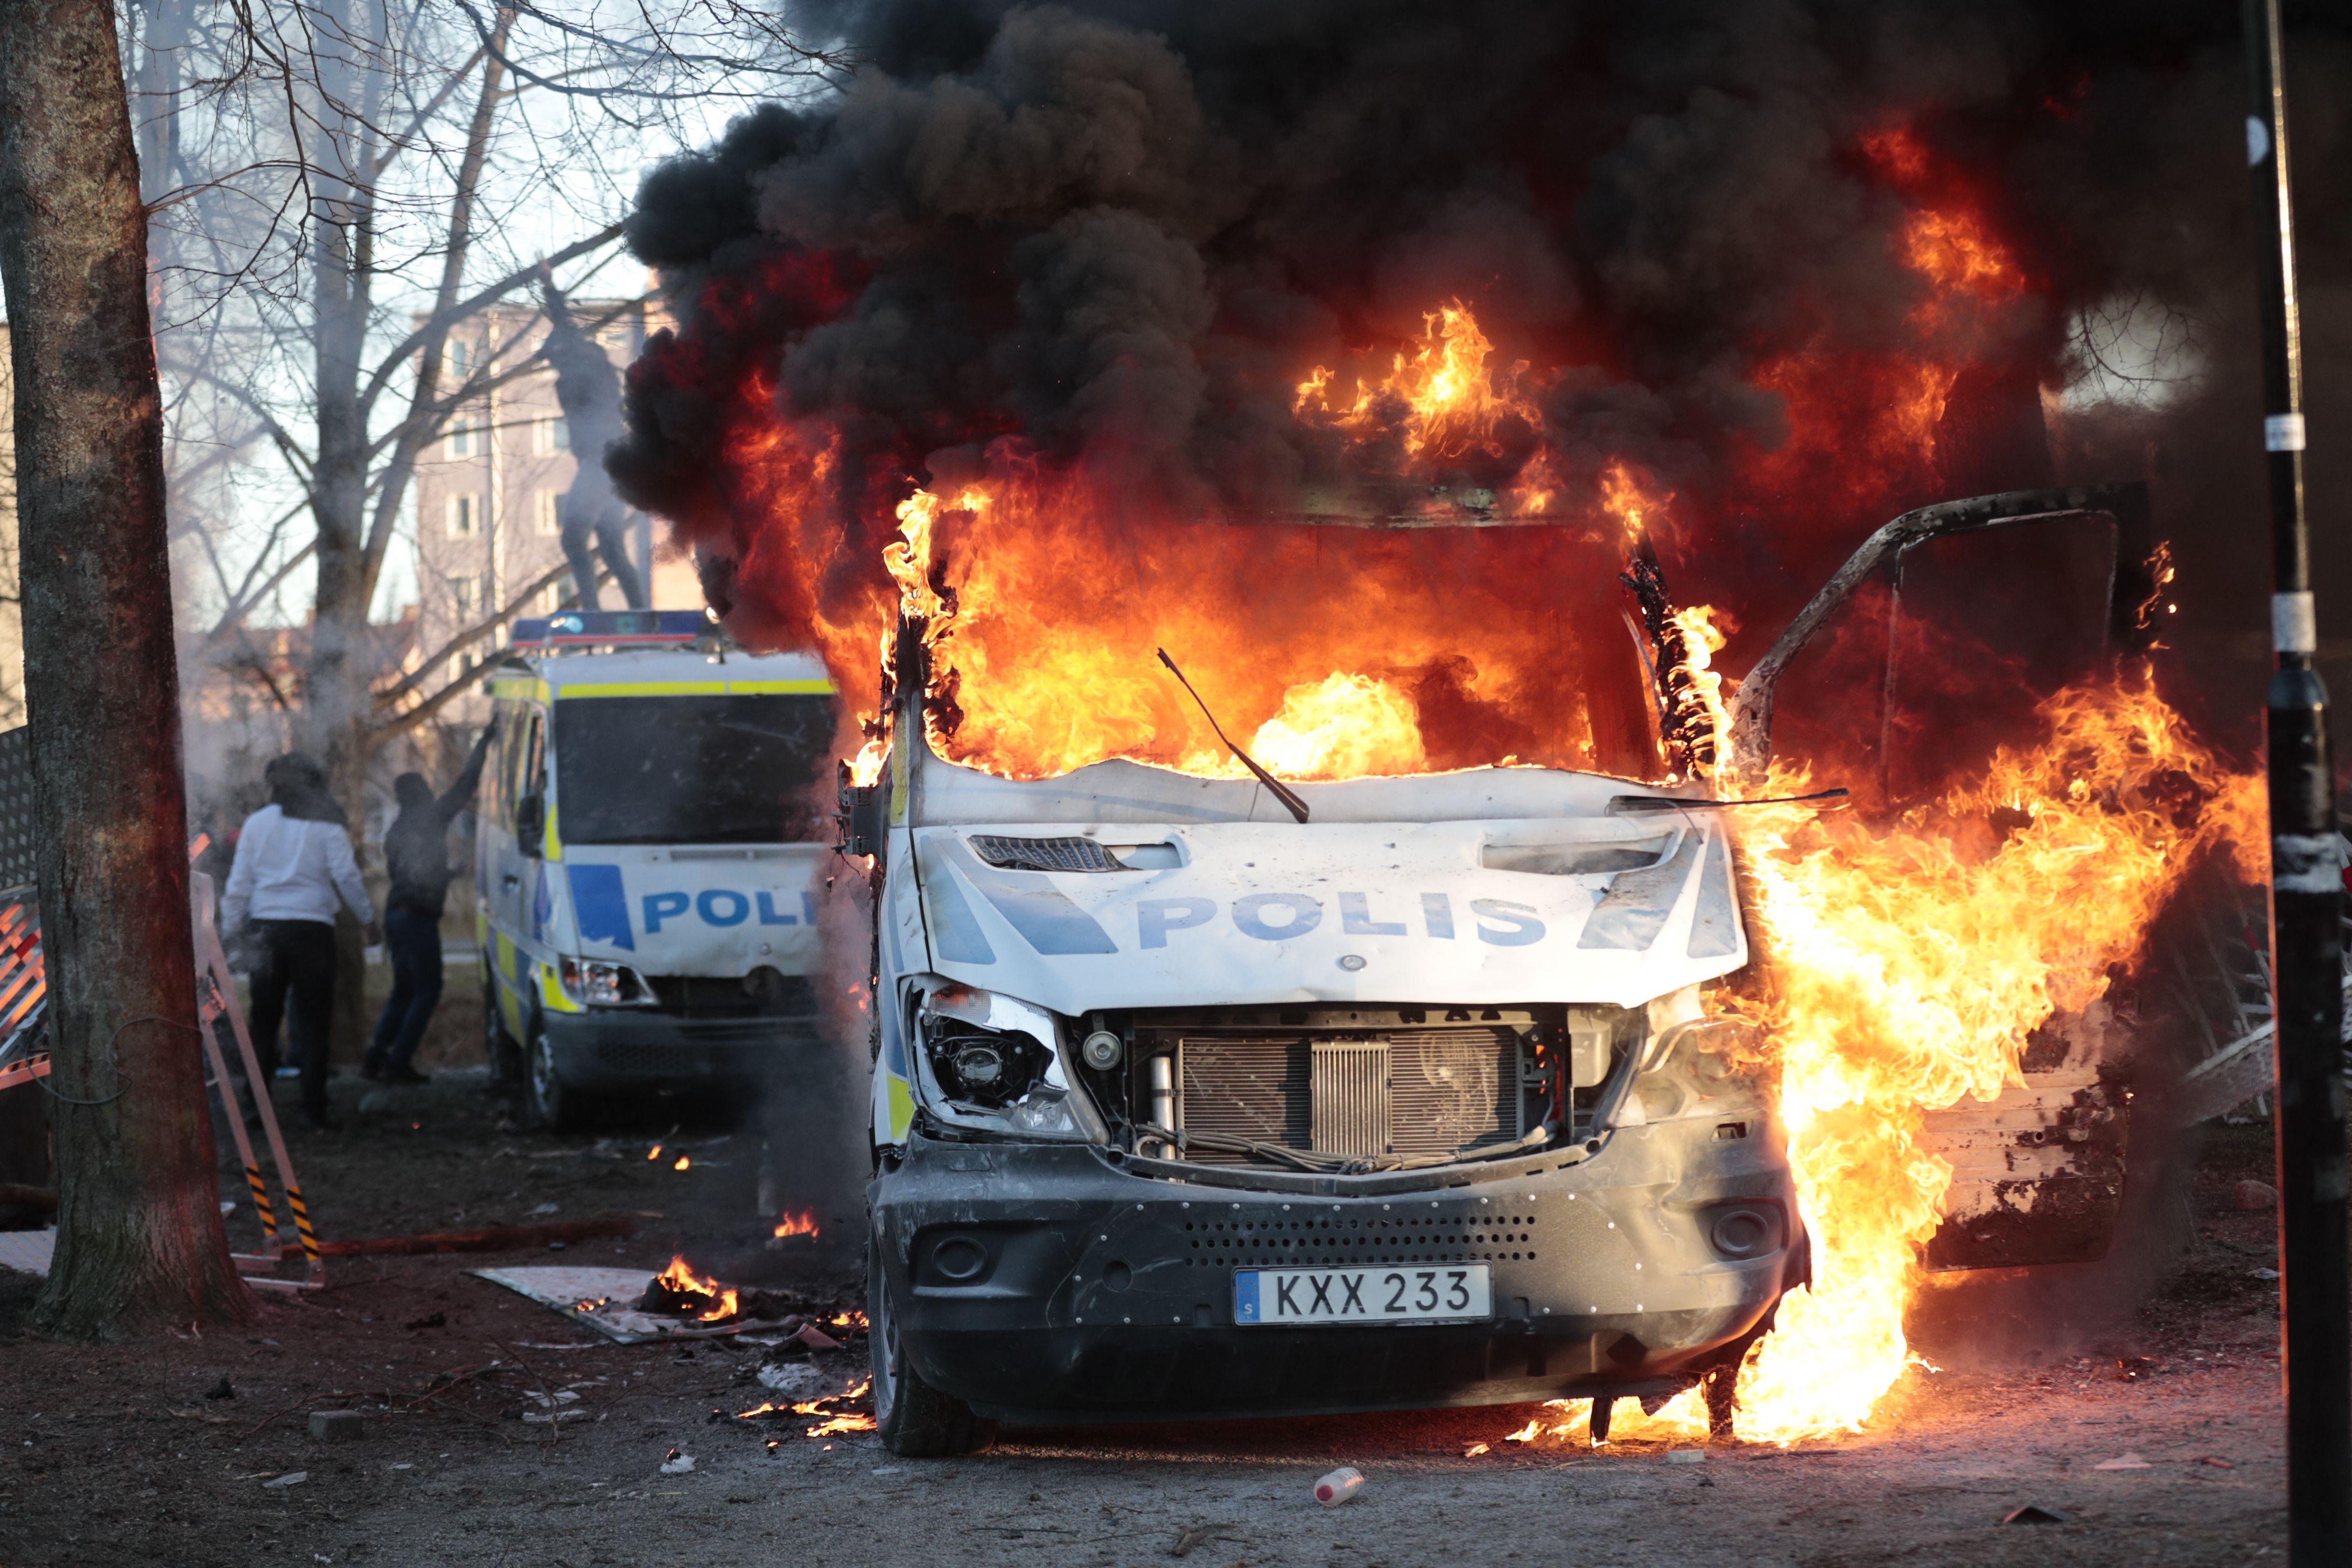 Der schwedische Ministerpräsident hat die Streitkräfte aufgefordert, bei der Eindämmung der Gewalt zu helfen, während Explosionen und Morde die Straßen füllen